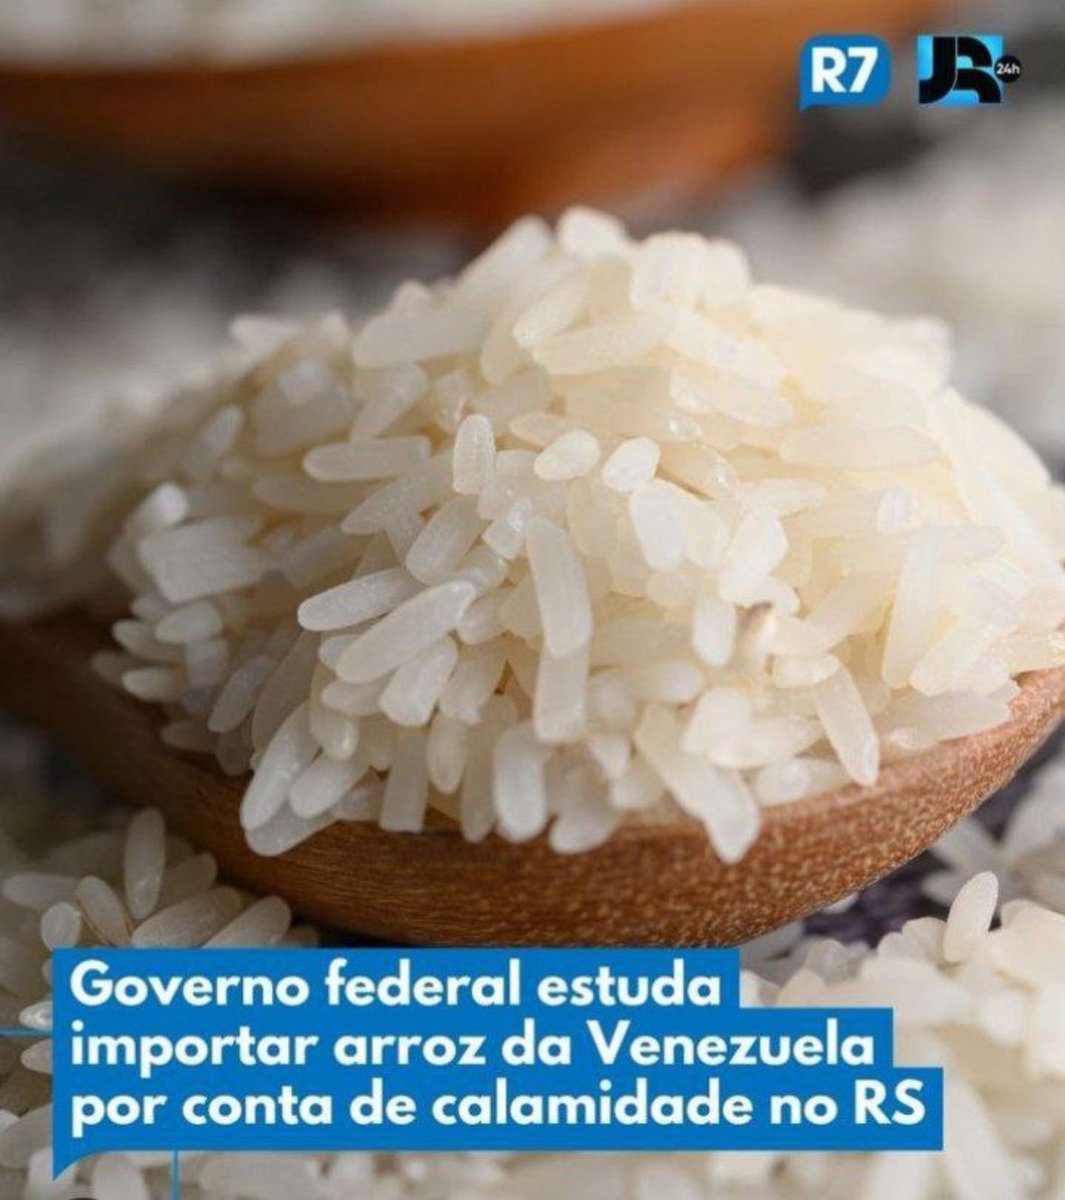 Eu tô ficando maluco, ou o Governo tá vendendo arroz pra Venezuela a preço de banana pra agora importar a preço de ouro? Tem parada errada aí irmão.